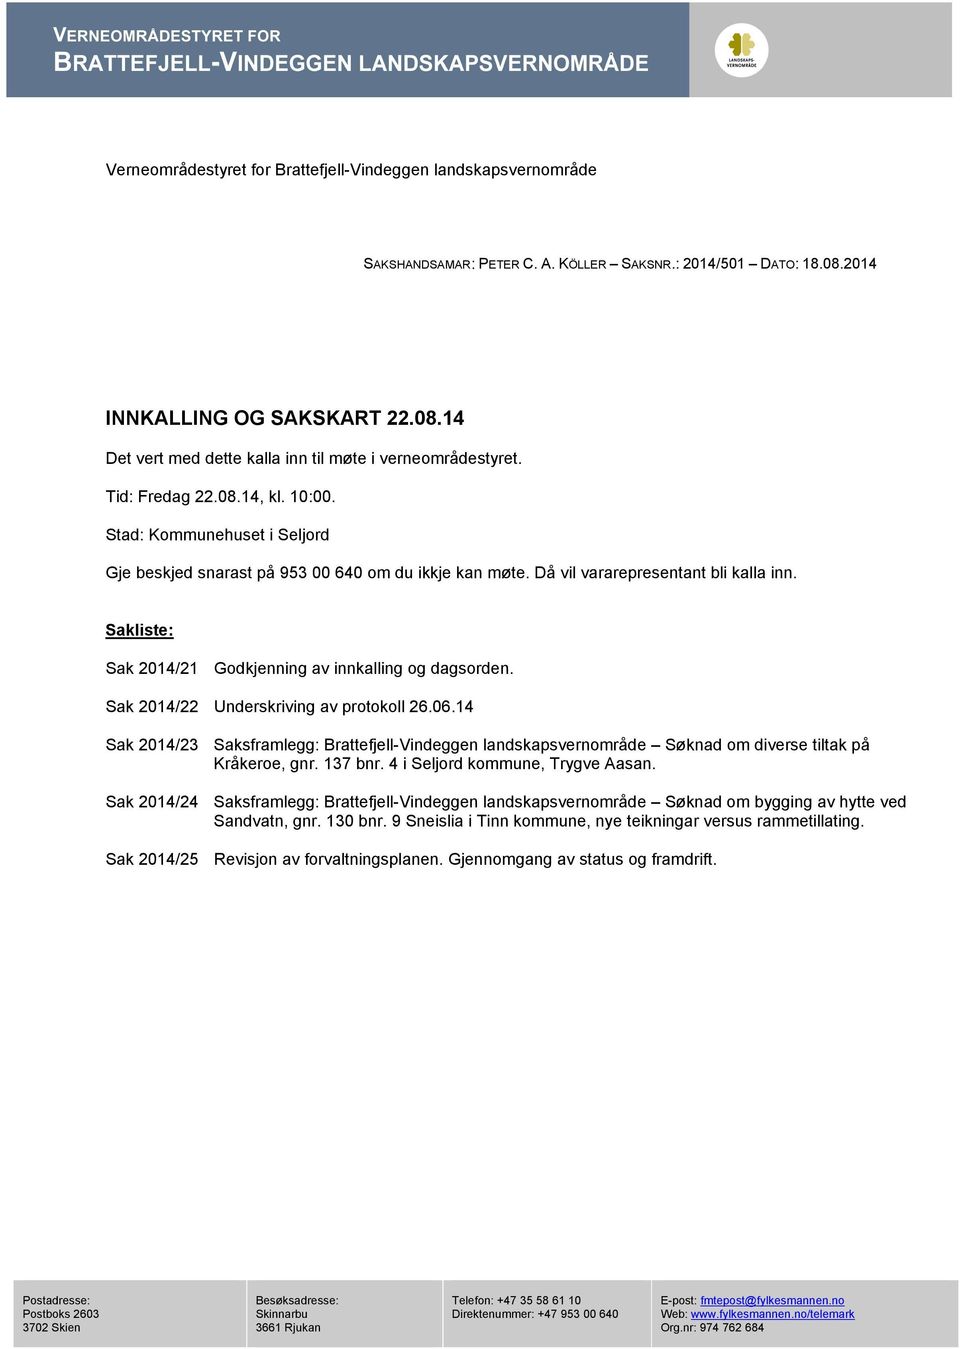 Sakliste: Sak 2014/21 Godkjenning av innkalling og dagsorden. Sak 2014/22 Underskriving av protokoll 26.06.